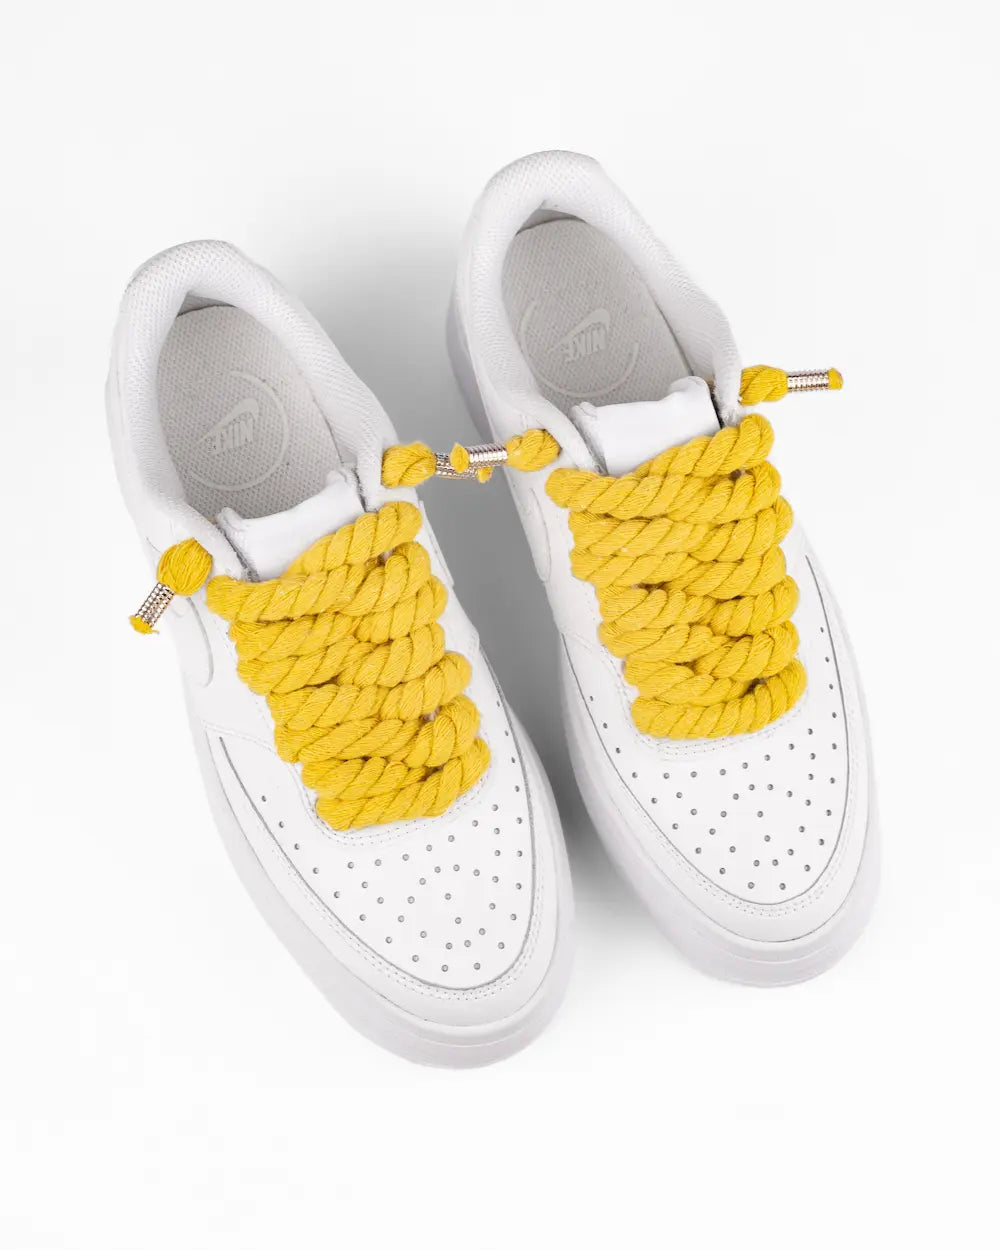 Nike Court Vision Platform personalizzata con lacci in corda grossi gialli